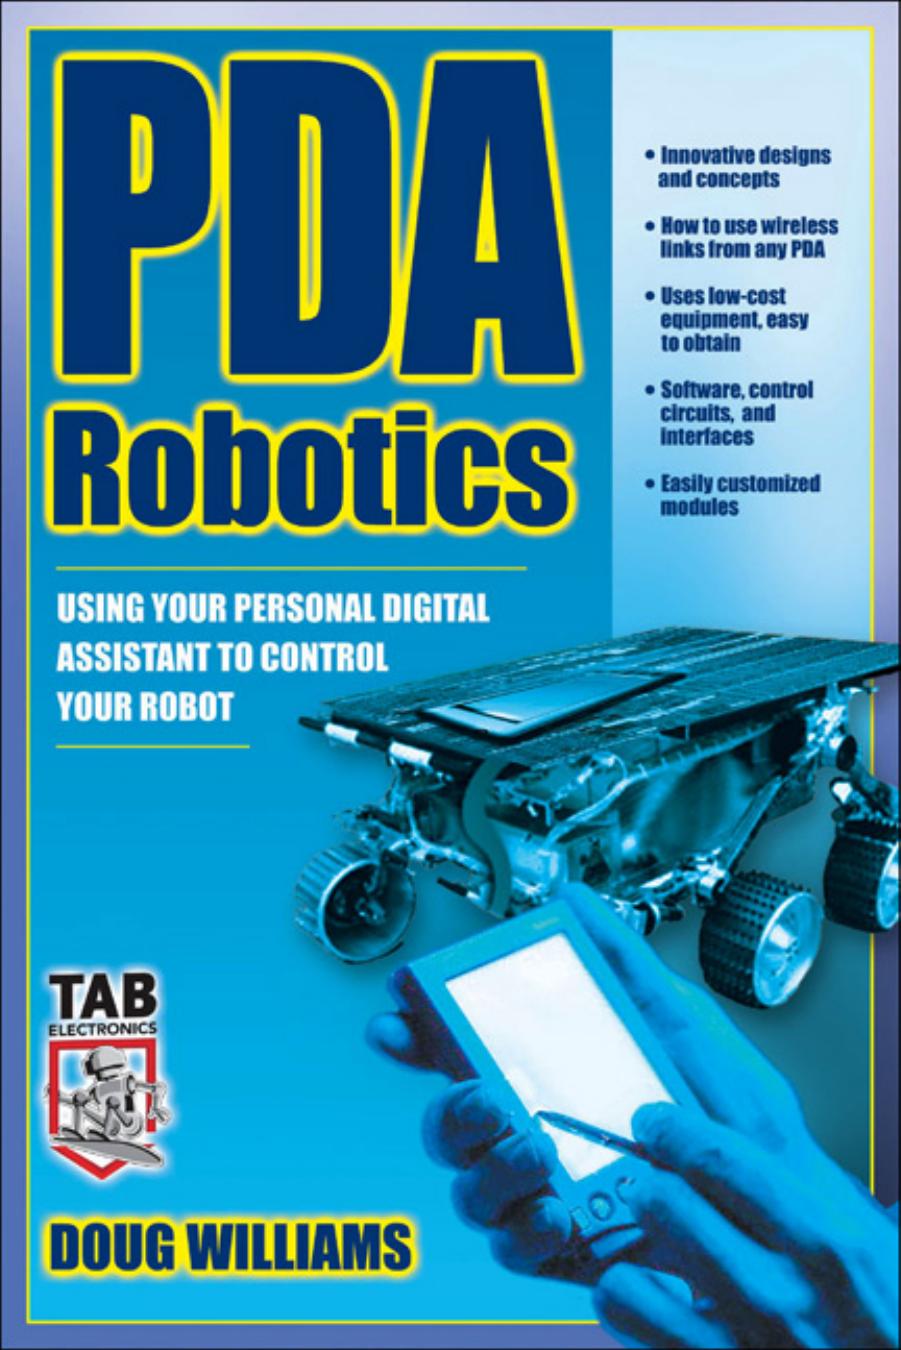 PDA Robotics